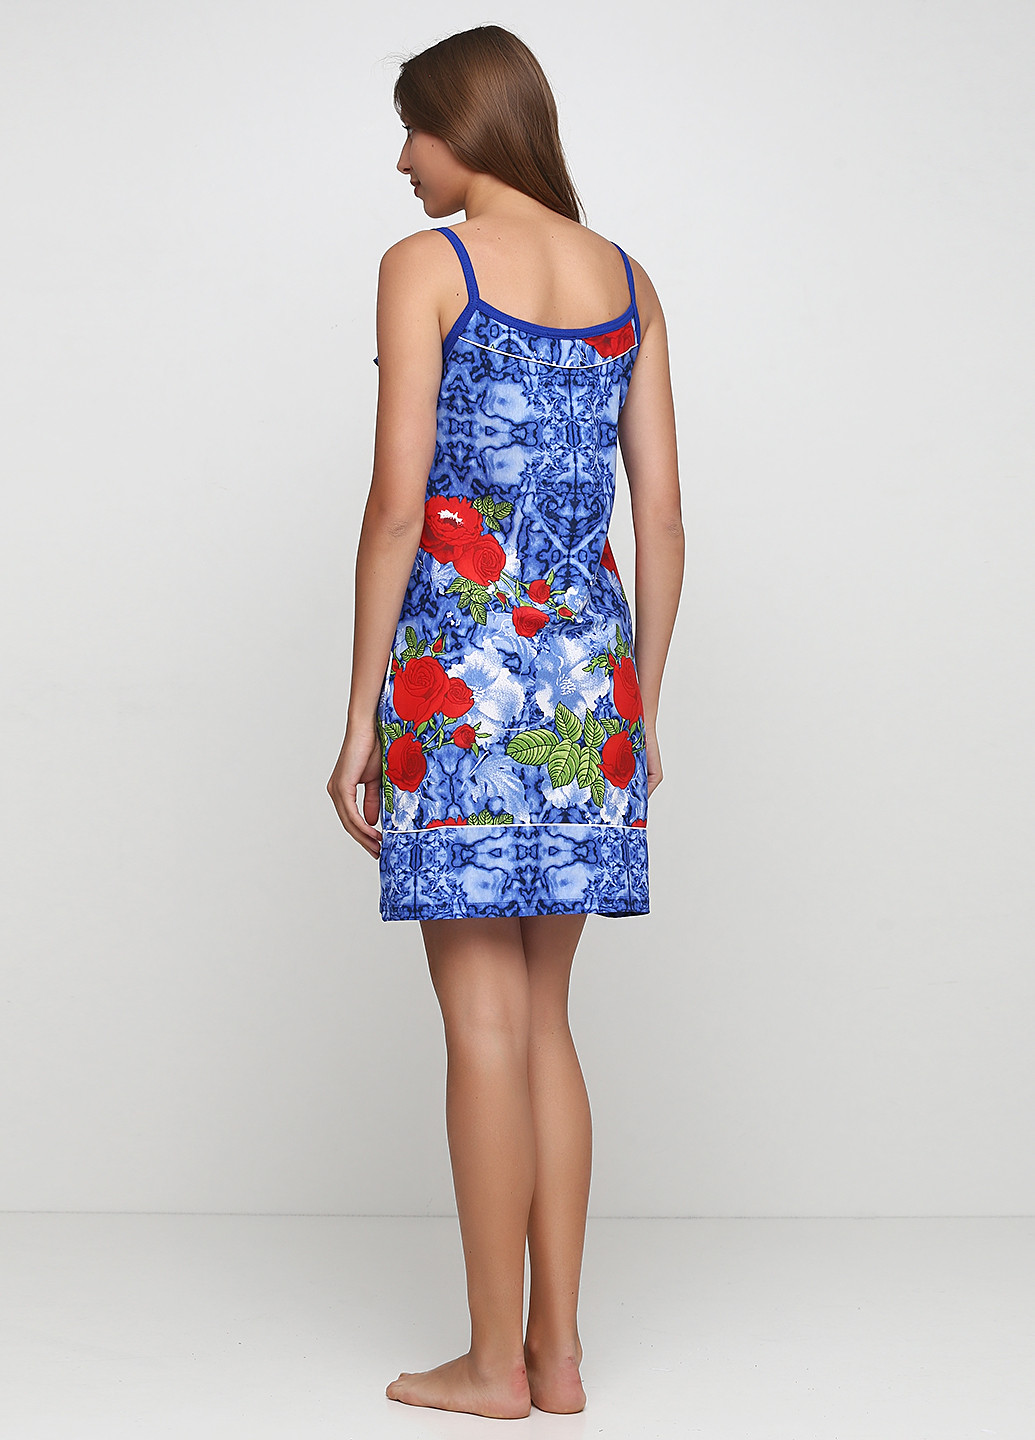 Синее домашнее платье платье-майка Трикомир с цветочным принтом